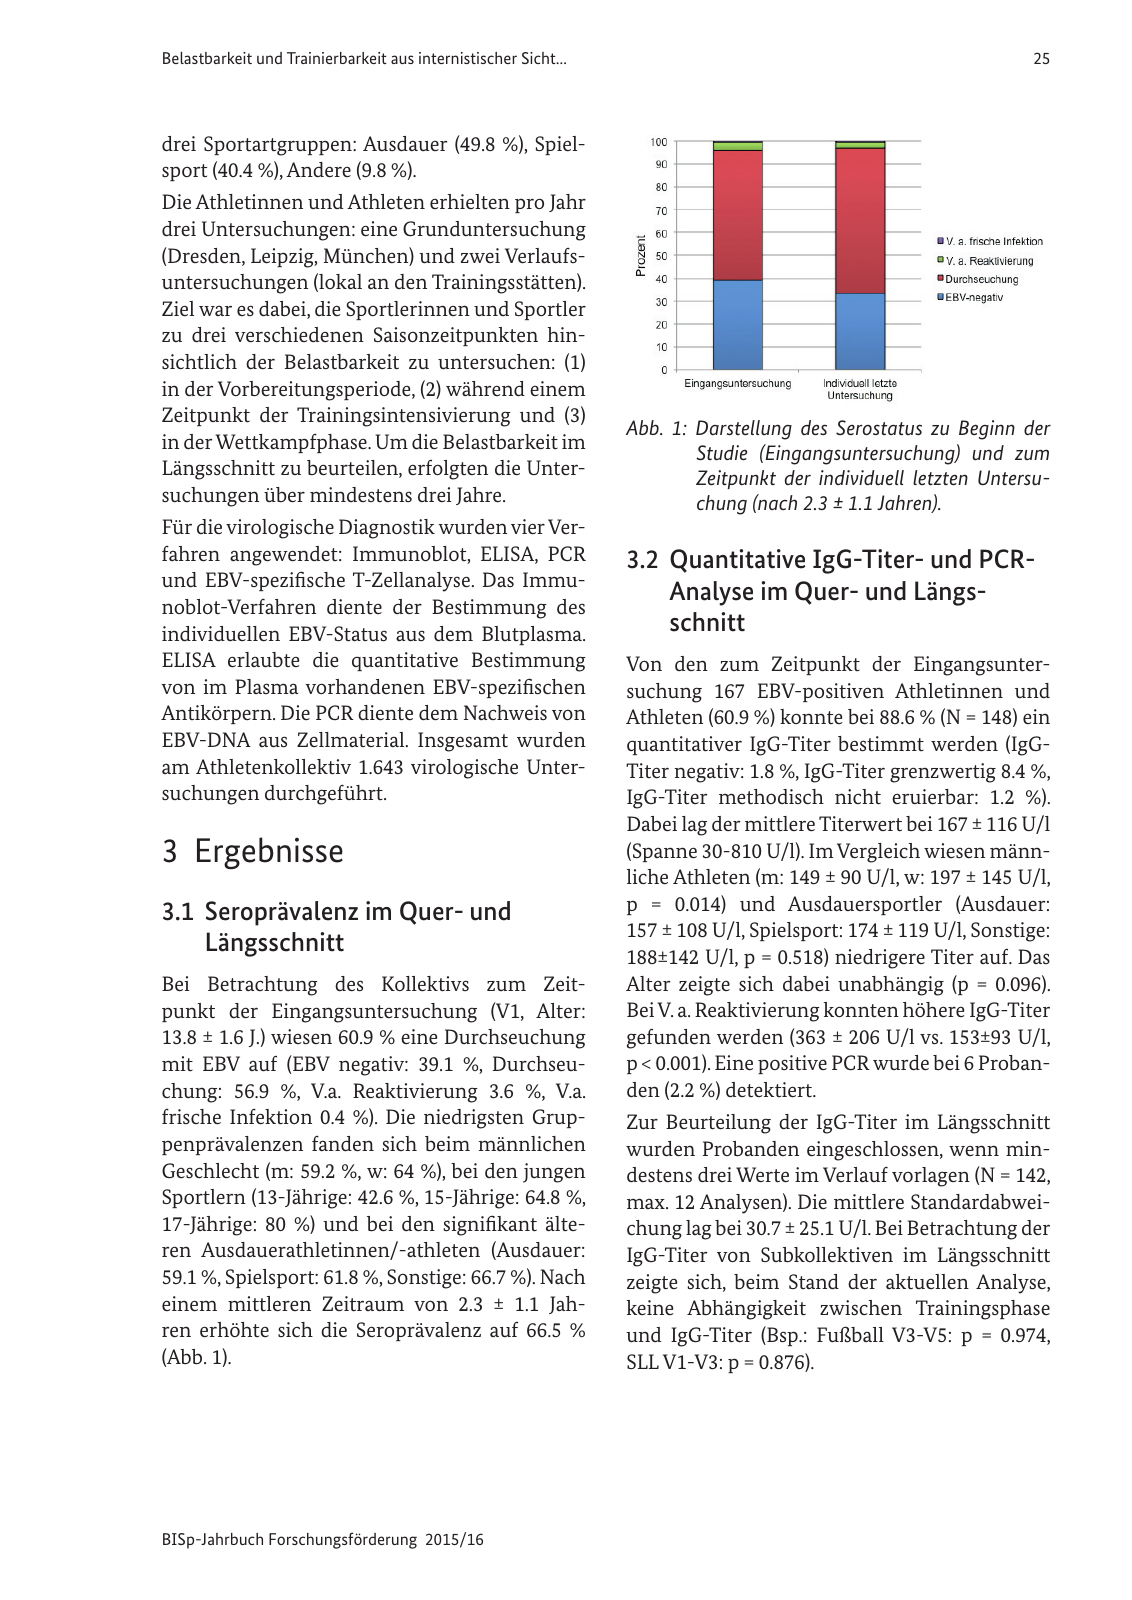 Vorschau BISp-Jahrbuch Forschungsförderung 2015/16 Seite 27